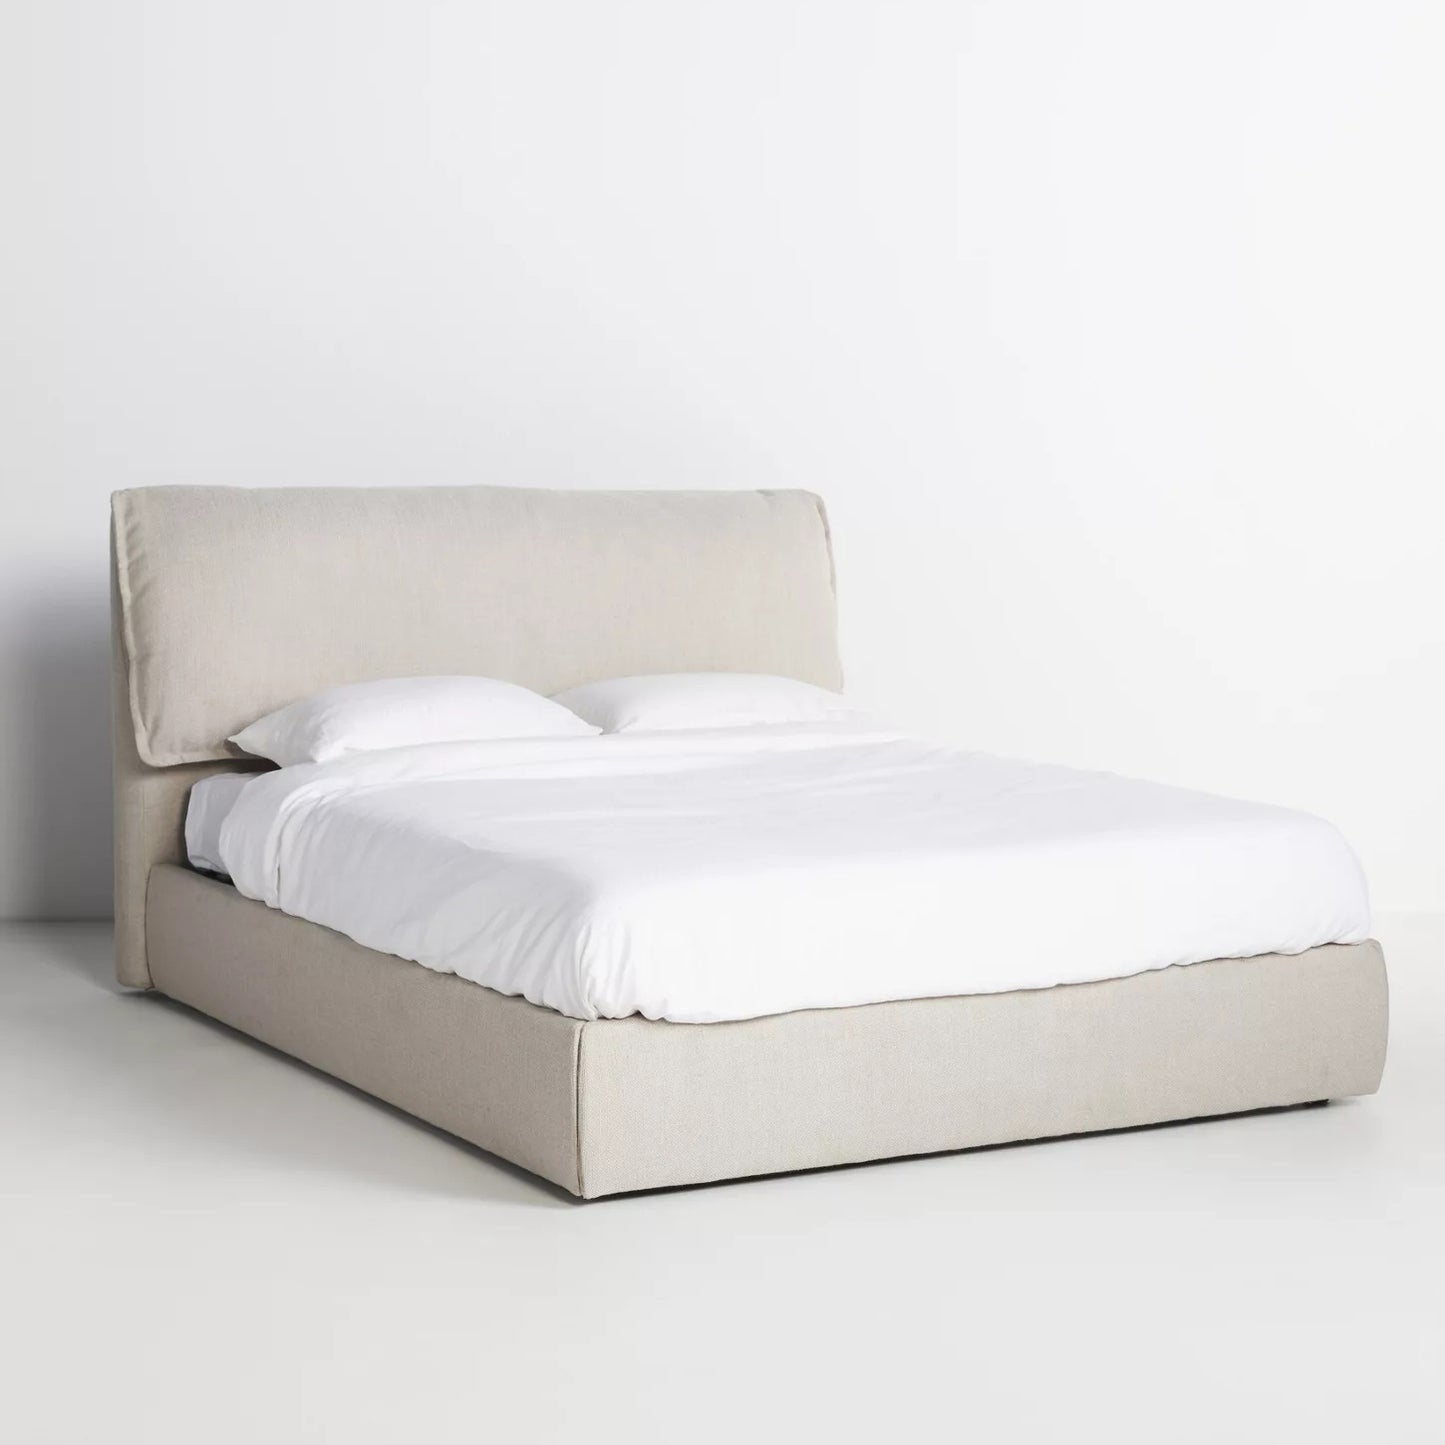 Bed 120 x 195 cm - TEM166